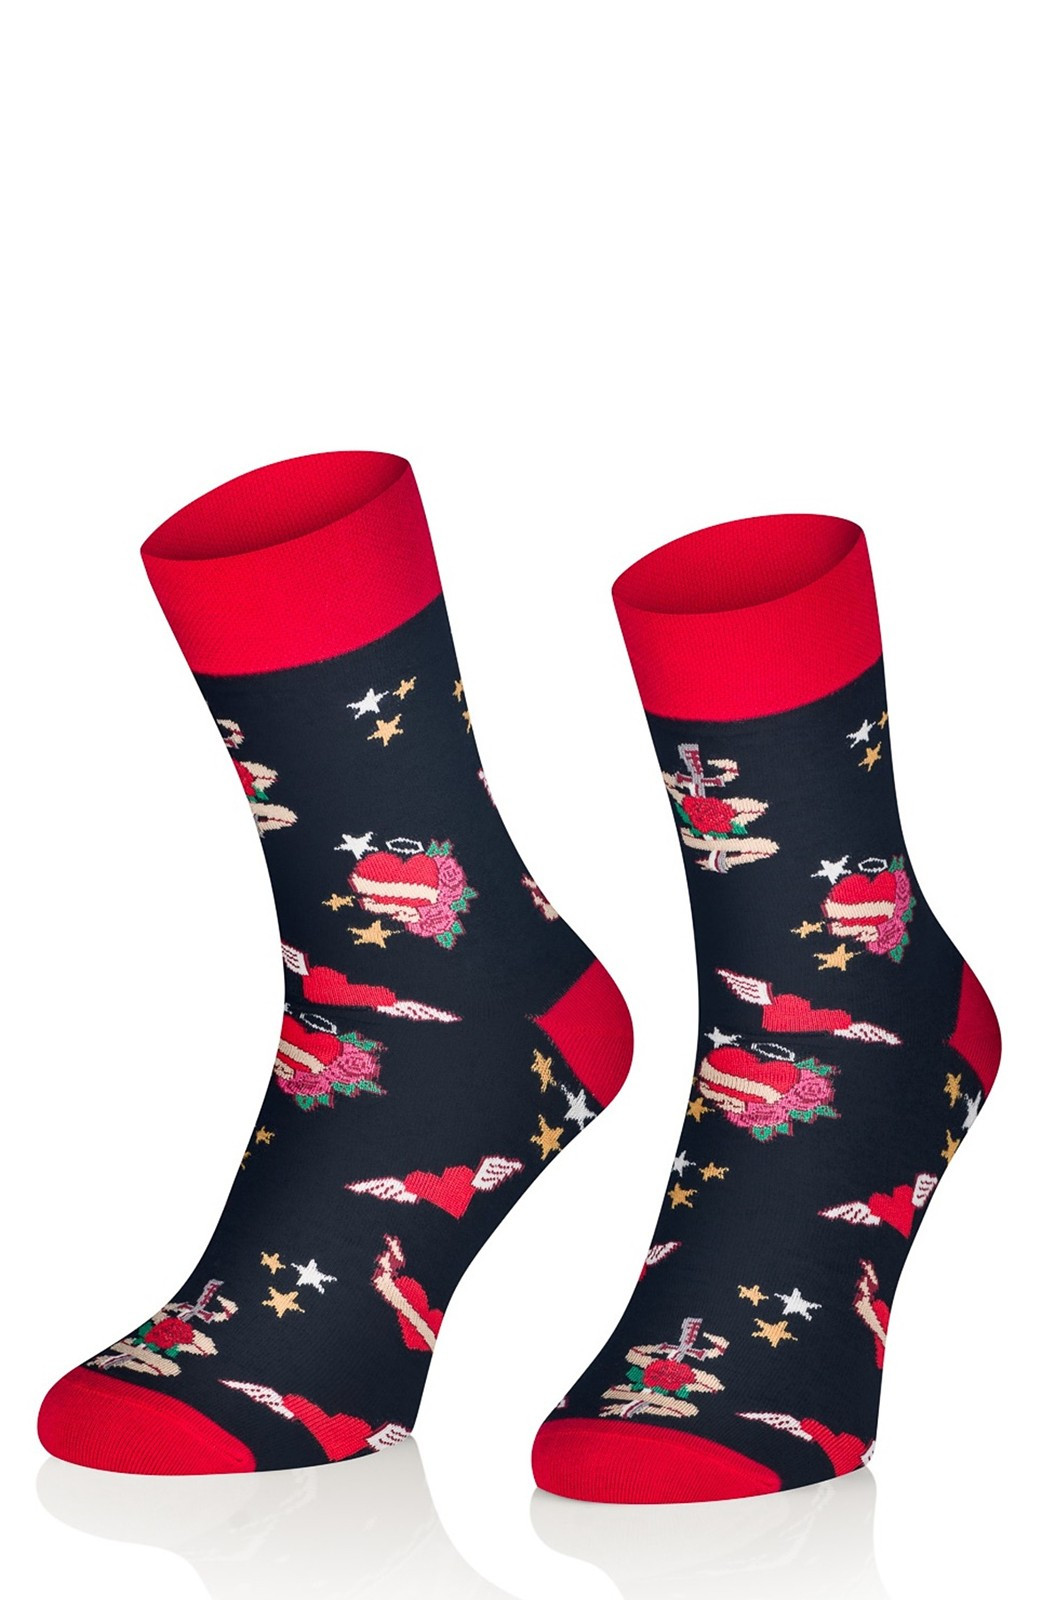 Pánské valentýnské ponožky Intenso 0549 Follow Your Passion 41-46 červeno-černá 41-43